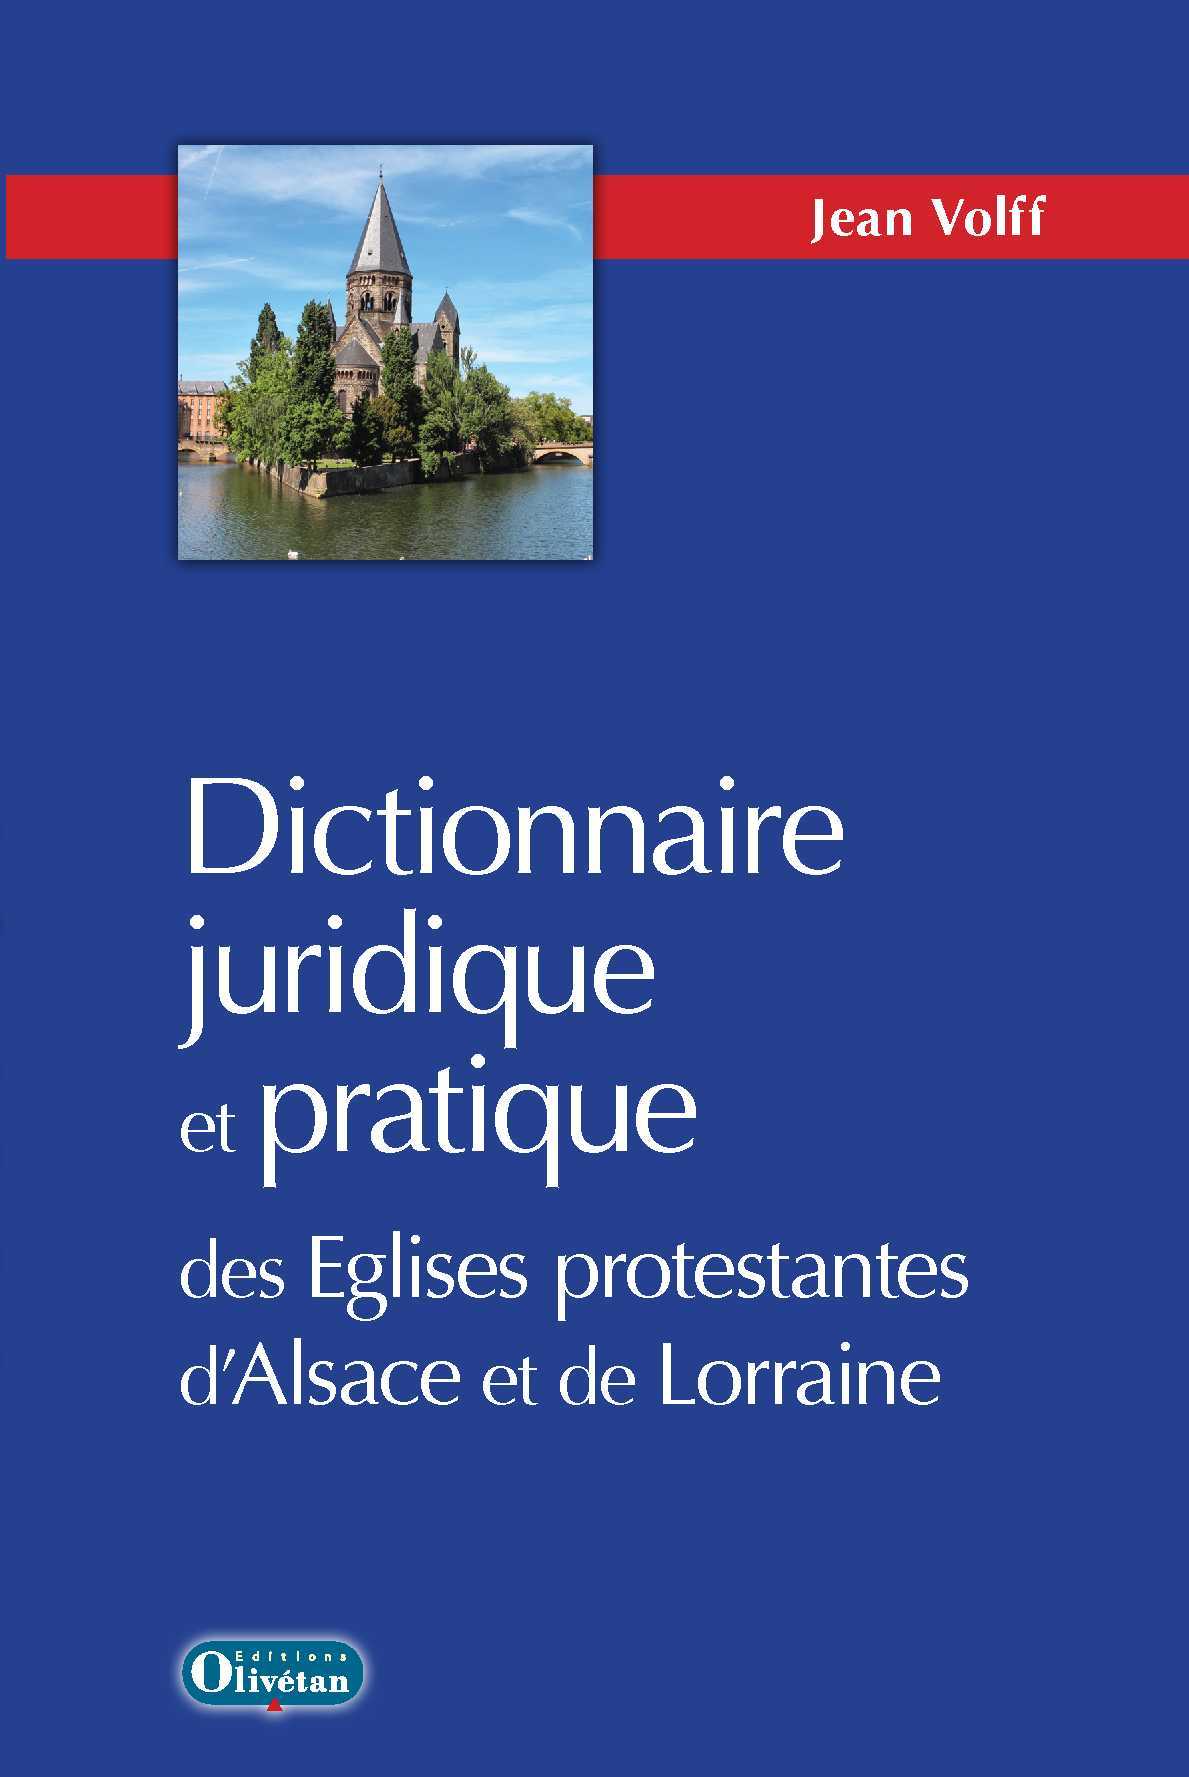 Kniha Dictionnaire juridique et pratique des Eglises protestantes d'Alsace-Lorraine Volff